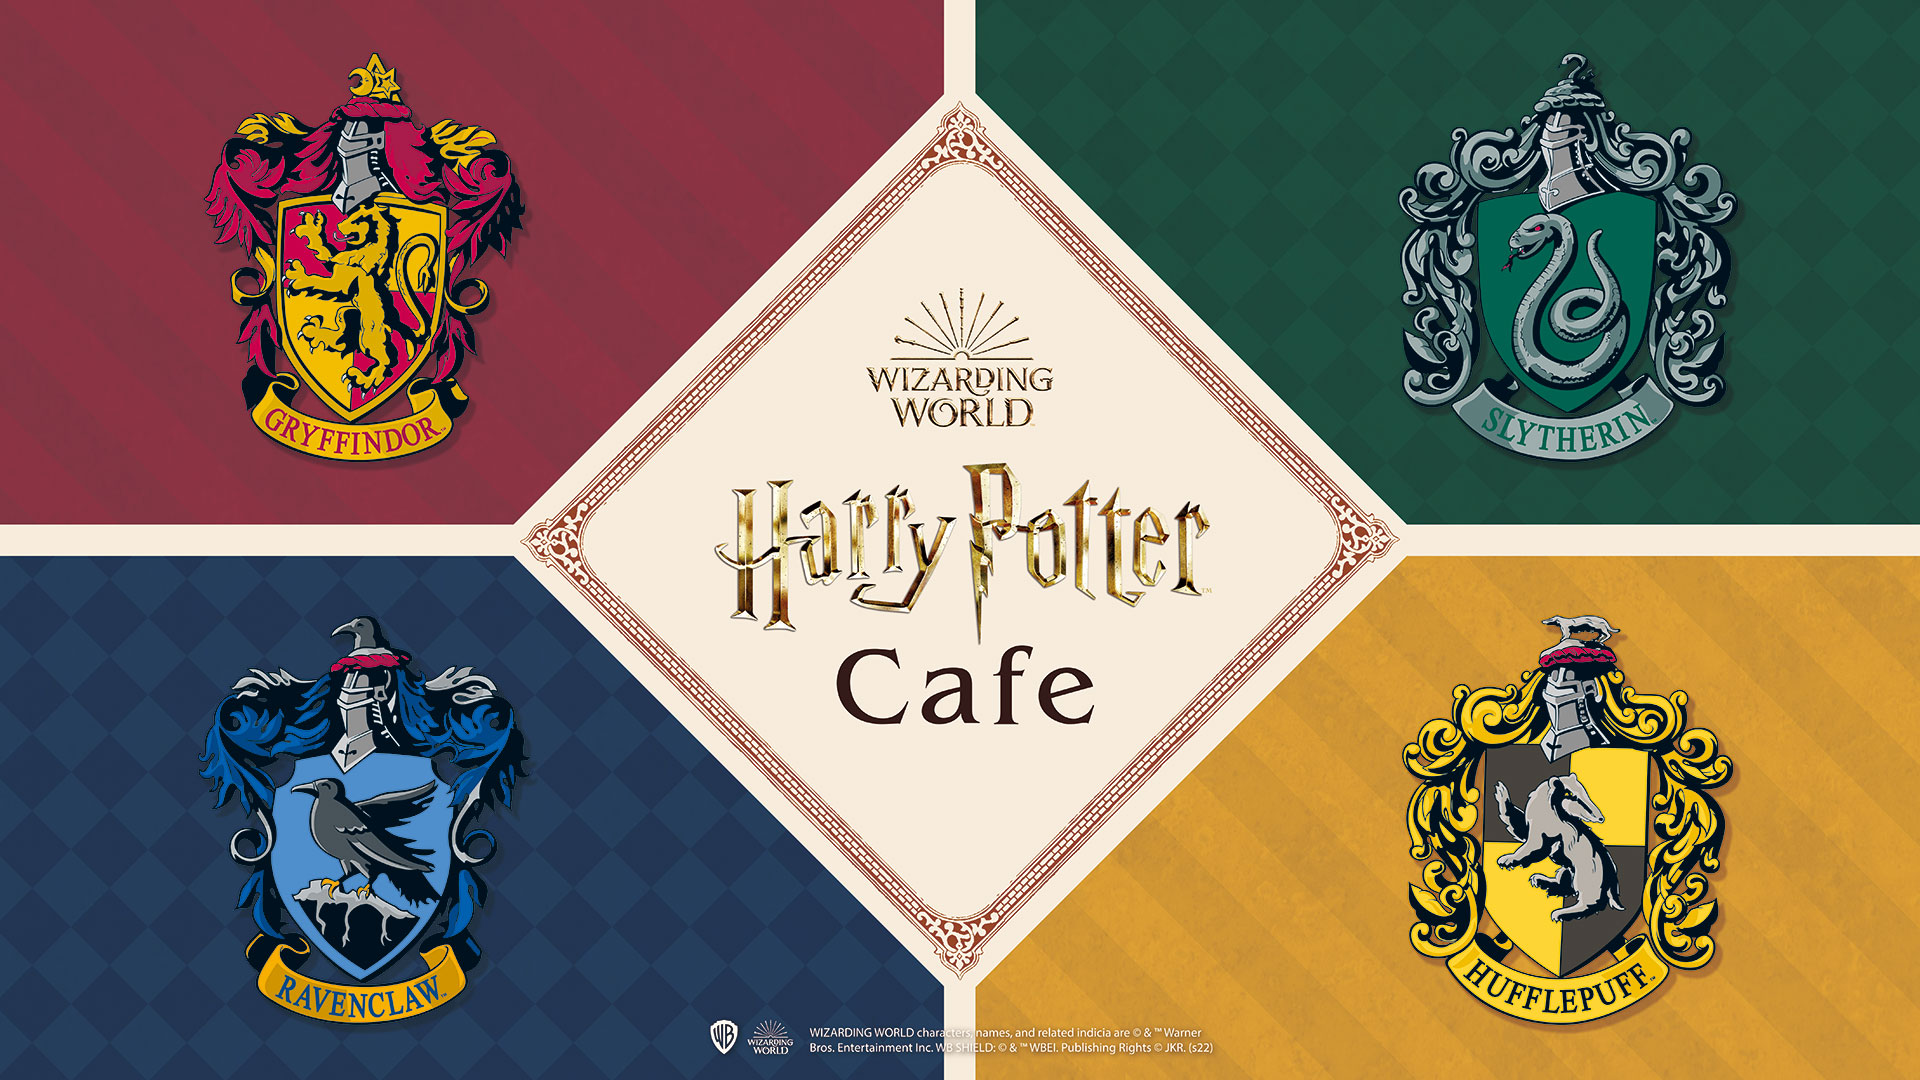 赤坂の街にハリー ポッター魔法ワールドにインスパイアされた世界が登場 Harry Potter Cafe 開催決定 株式会社エルティーアールのプレスリリース